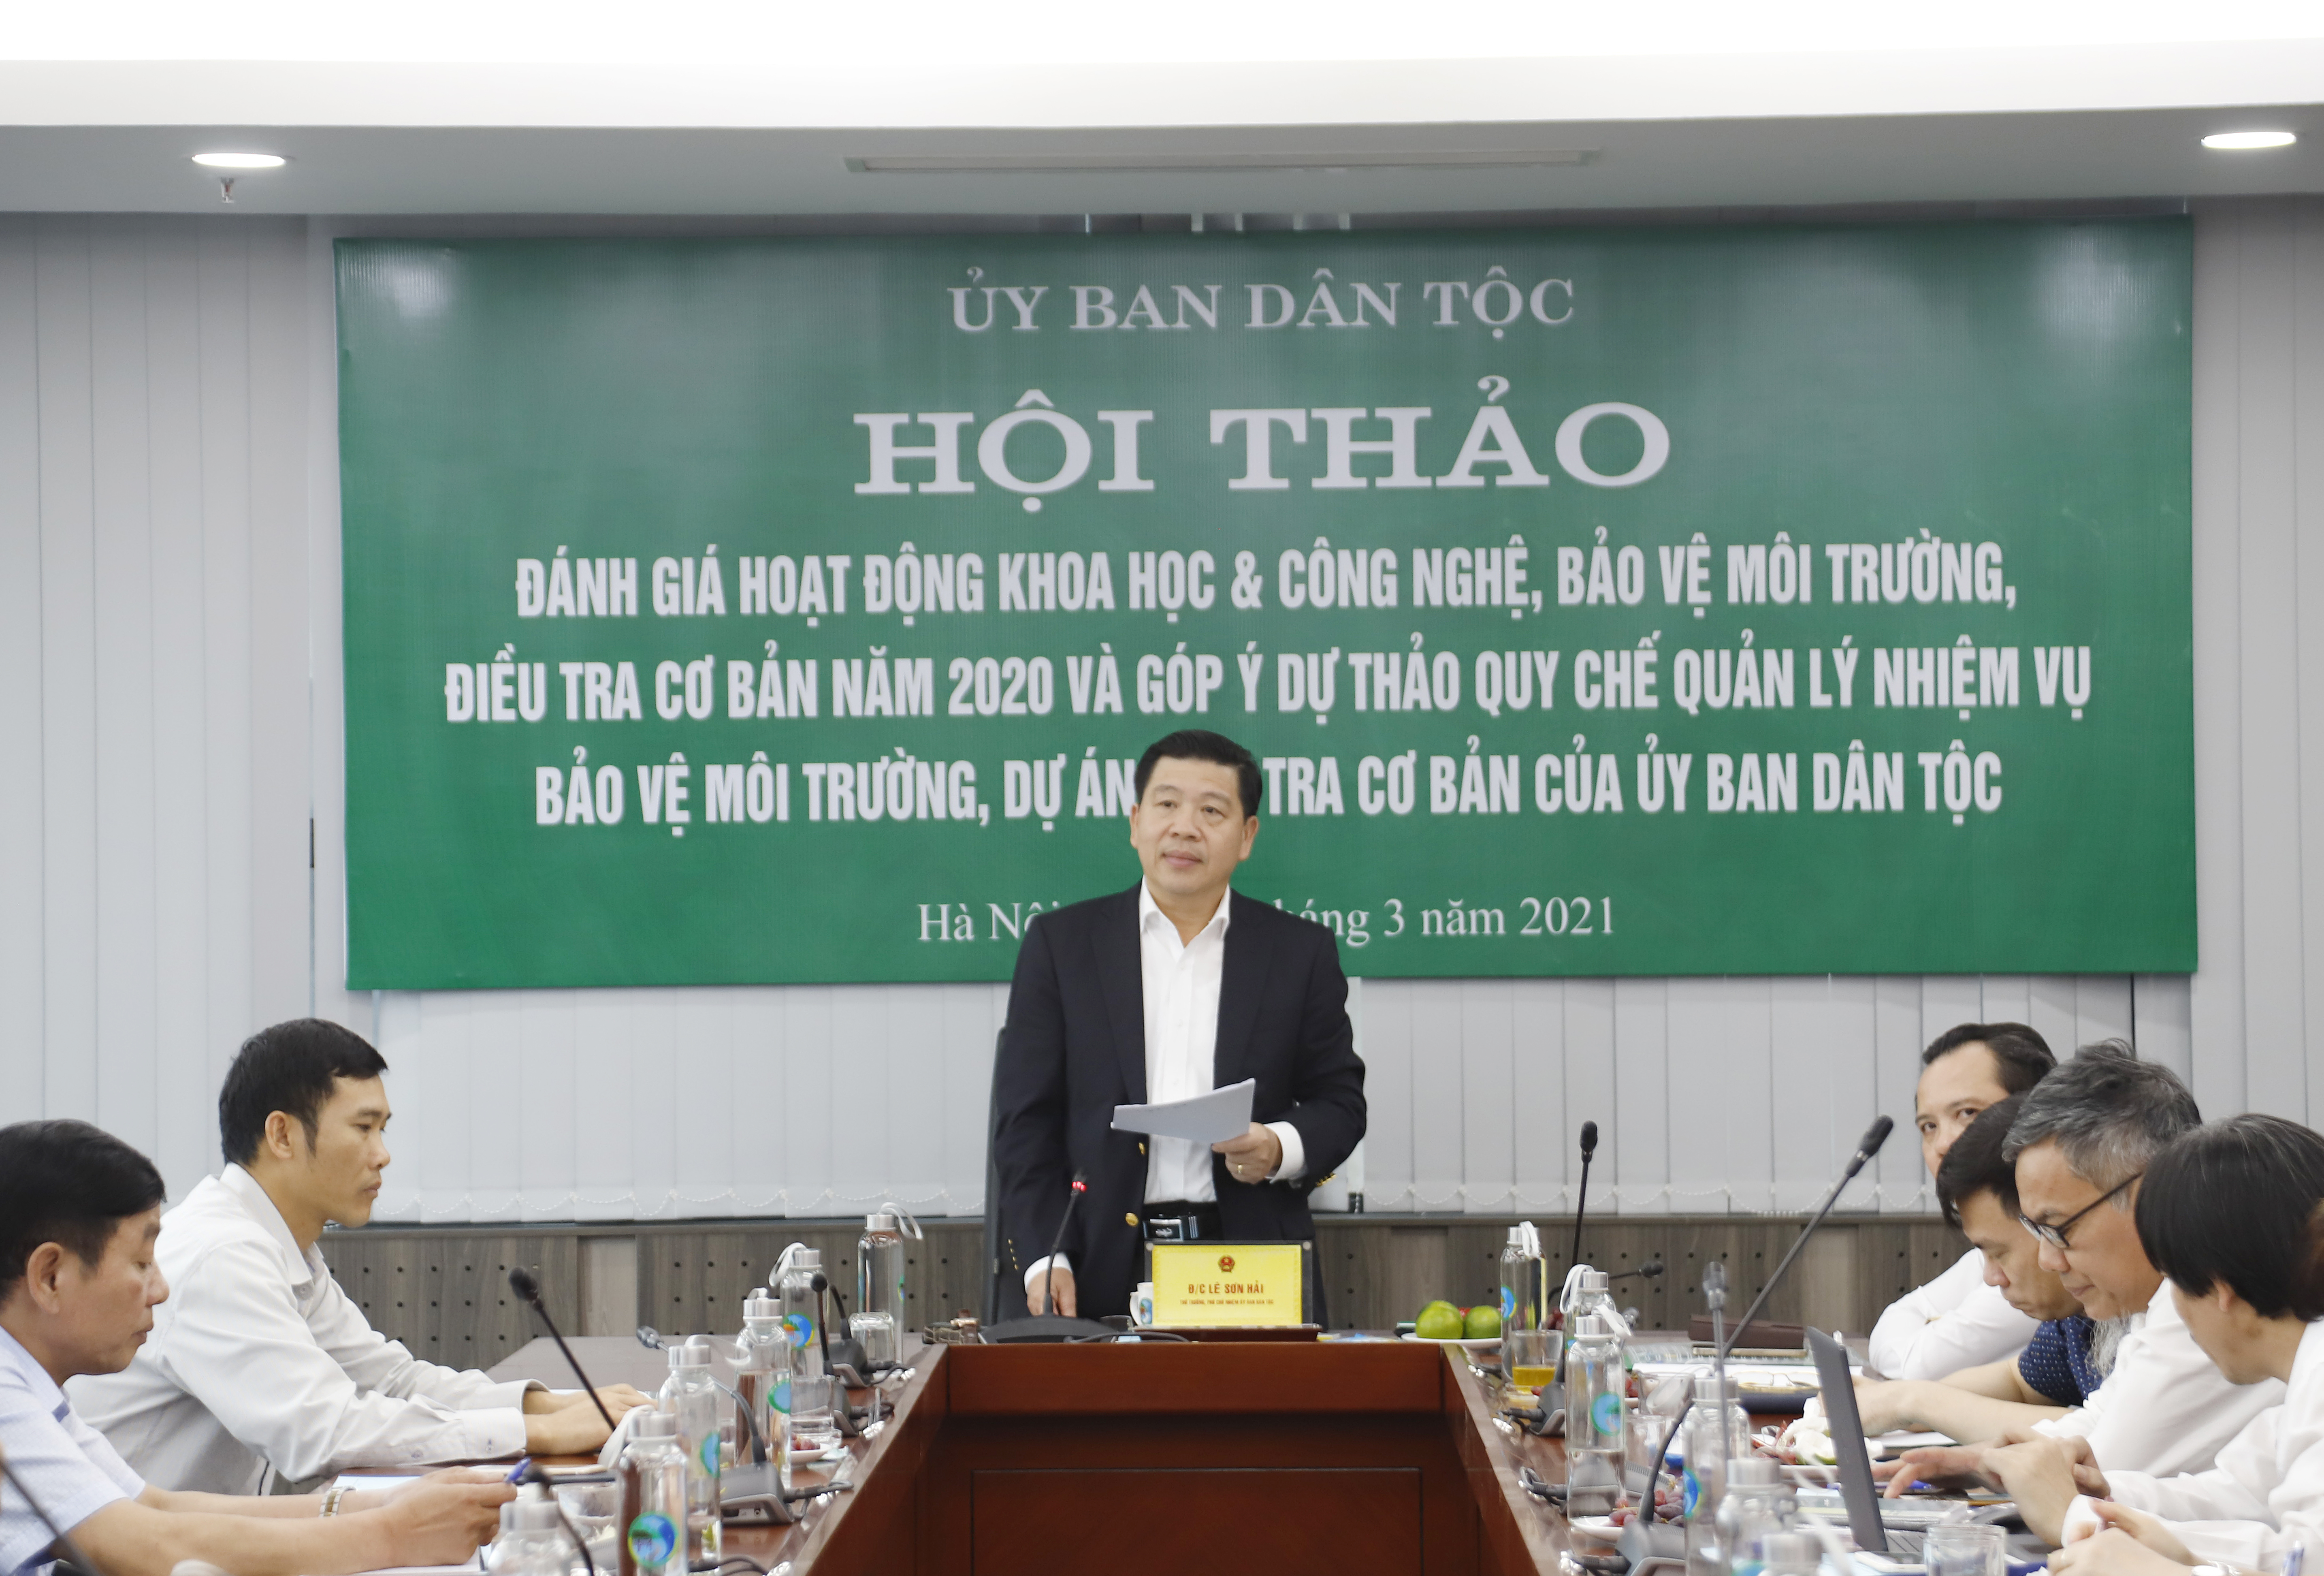 Thứ trưởng, Phó Chủ nhiệm UBDT Lê Sơn Hải phát biểu tại Hội thảo